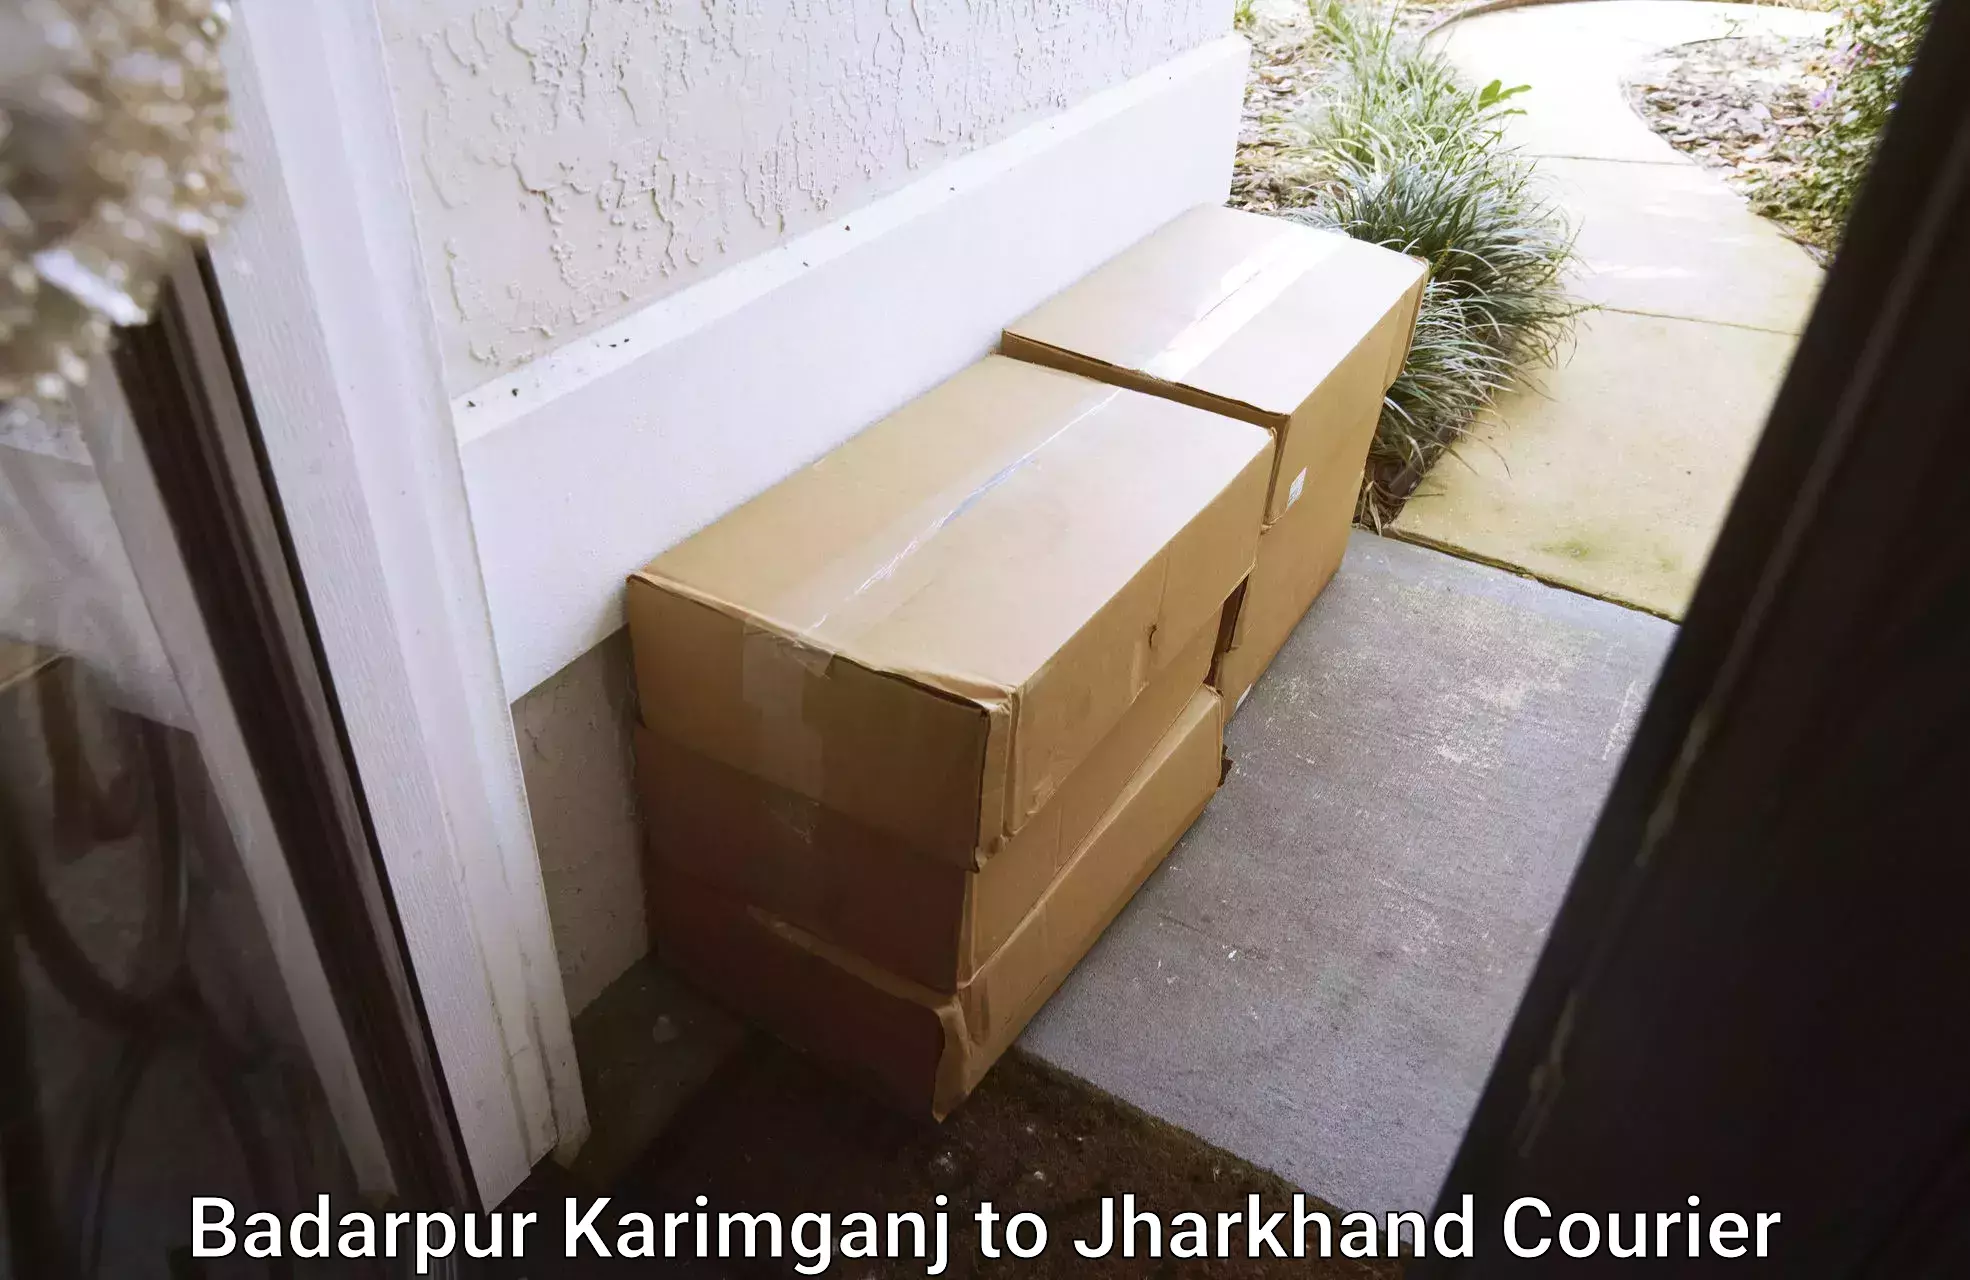 Efficient parcel service Badarpur Karimganj to Maheshpur